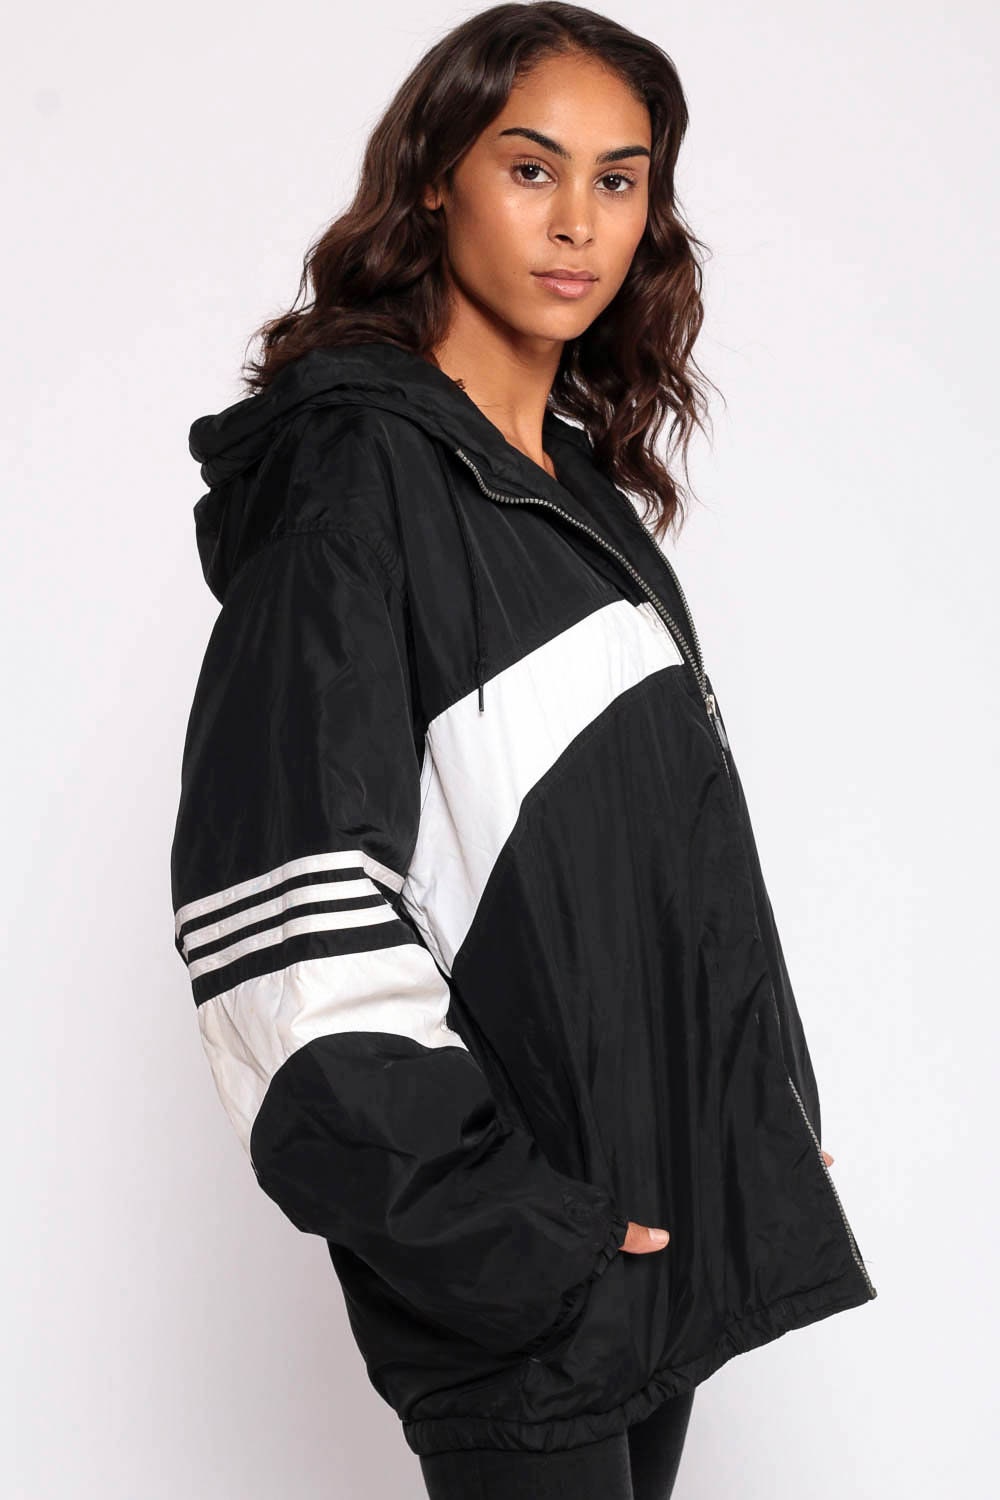 Black ADIDAS Jacket HOODIE Jacket Hood 90s Striped Hooded Athletic